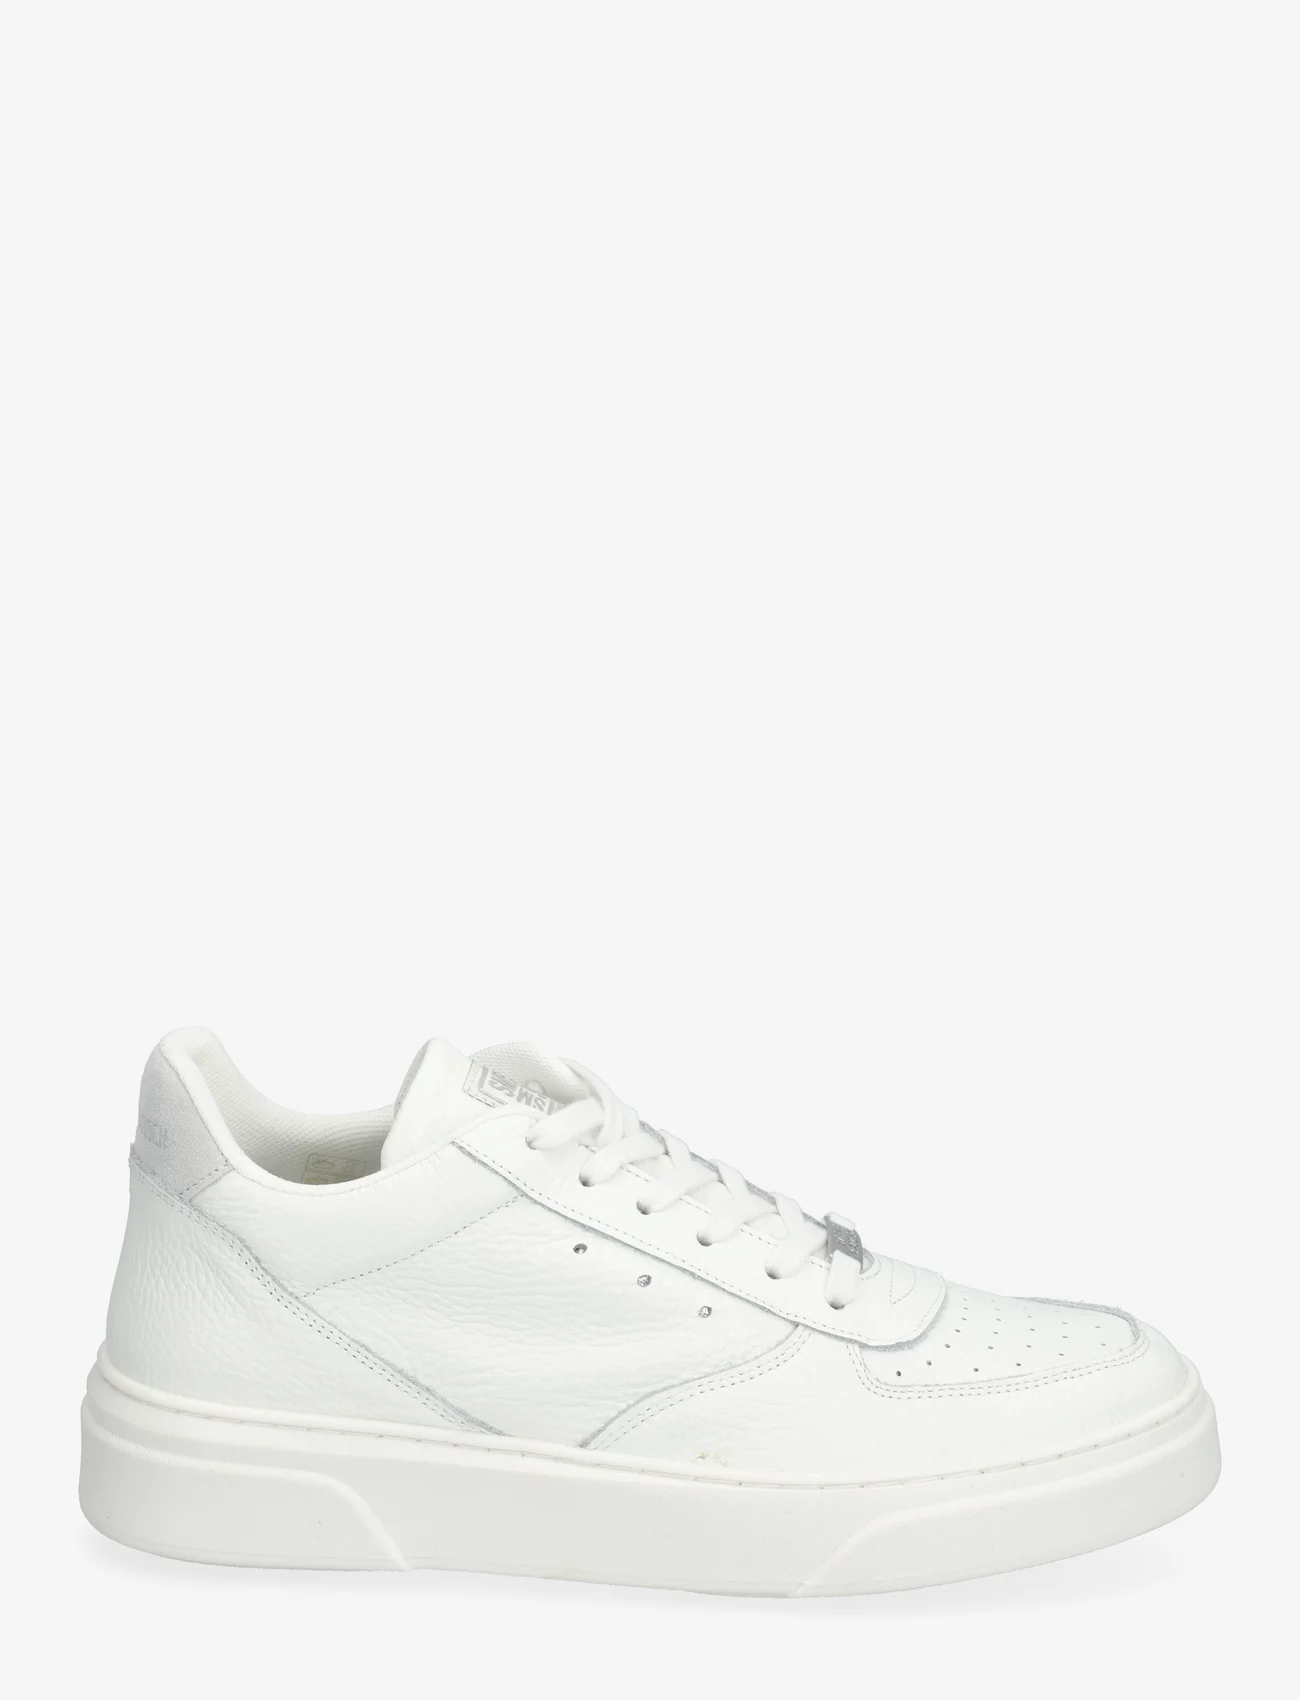 Steve Madden - Brent Sneaker - low tops - white leather - 1